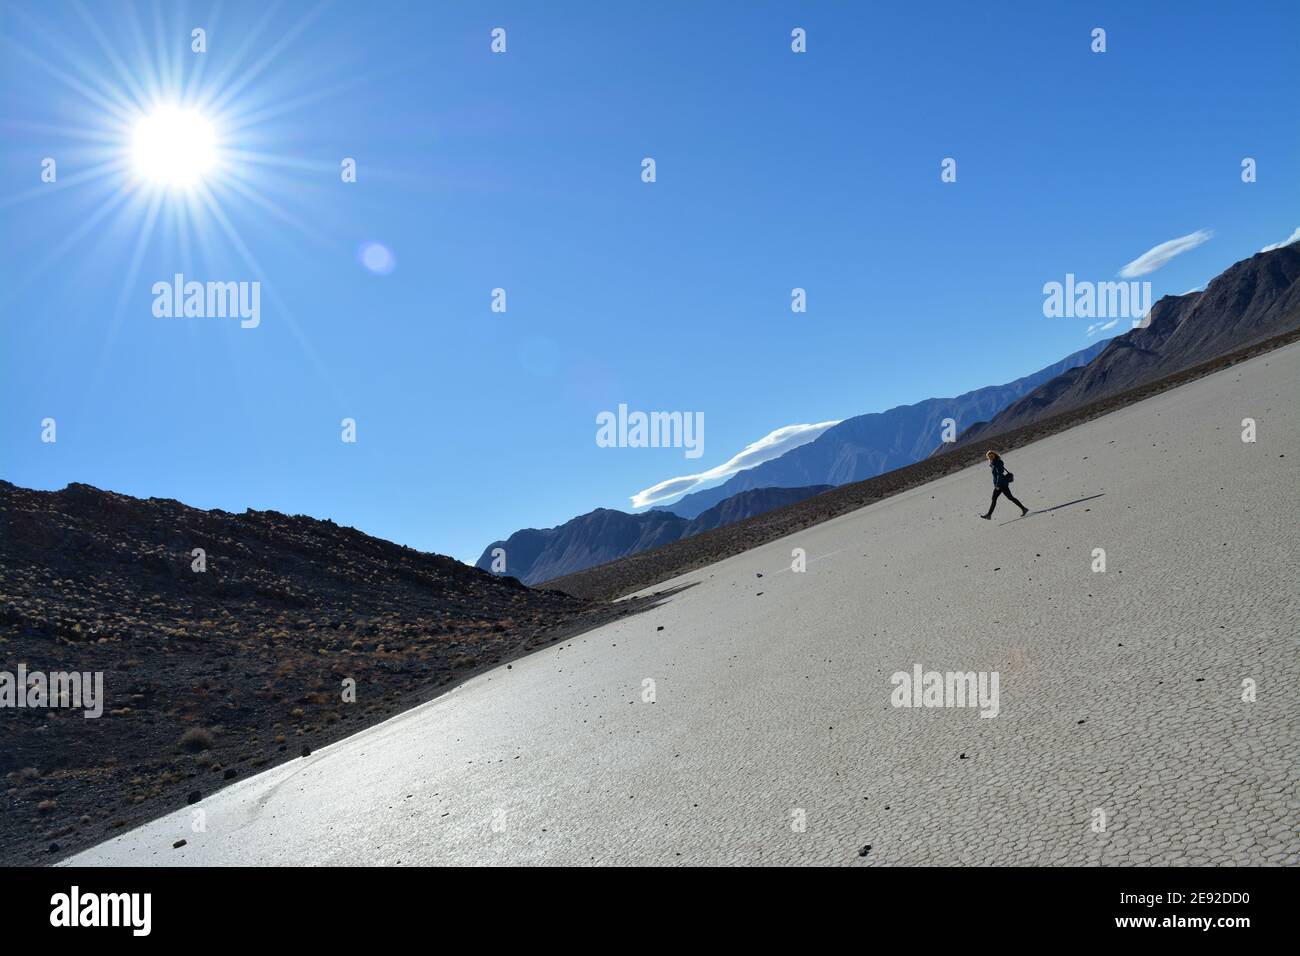 Frau, die an einem kalten Dezembertag über die Rennstrecke Playa im Death Valley National Park spazierengeht, wunderschöne Landschaft mit sich bewegenden Felsen, die Spuren hinterlassen Stockfoto